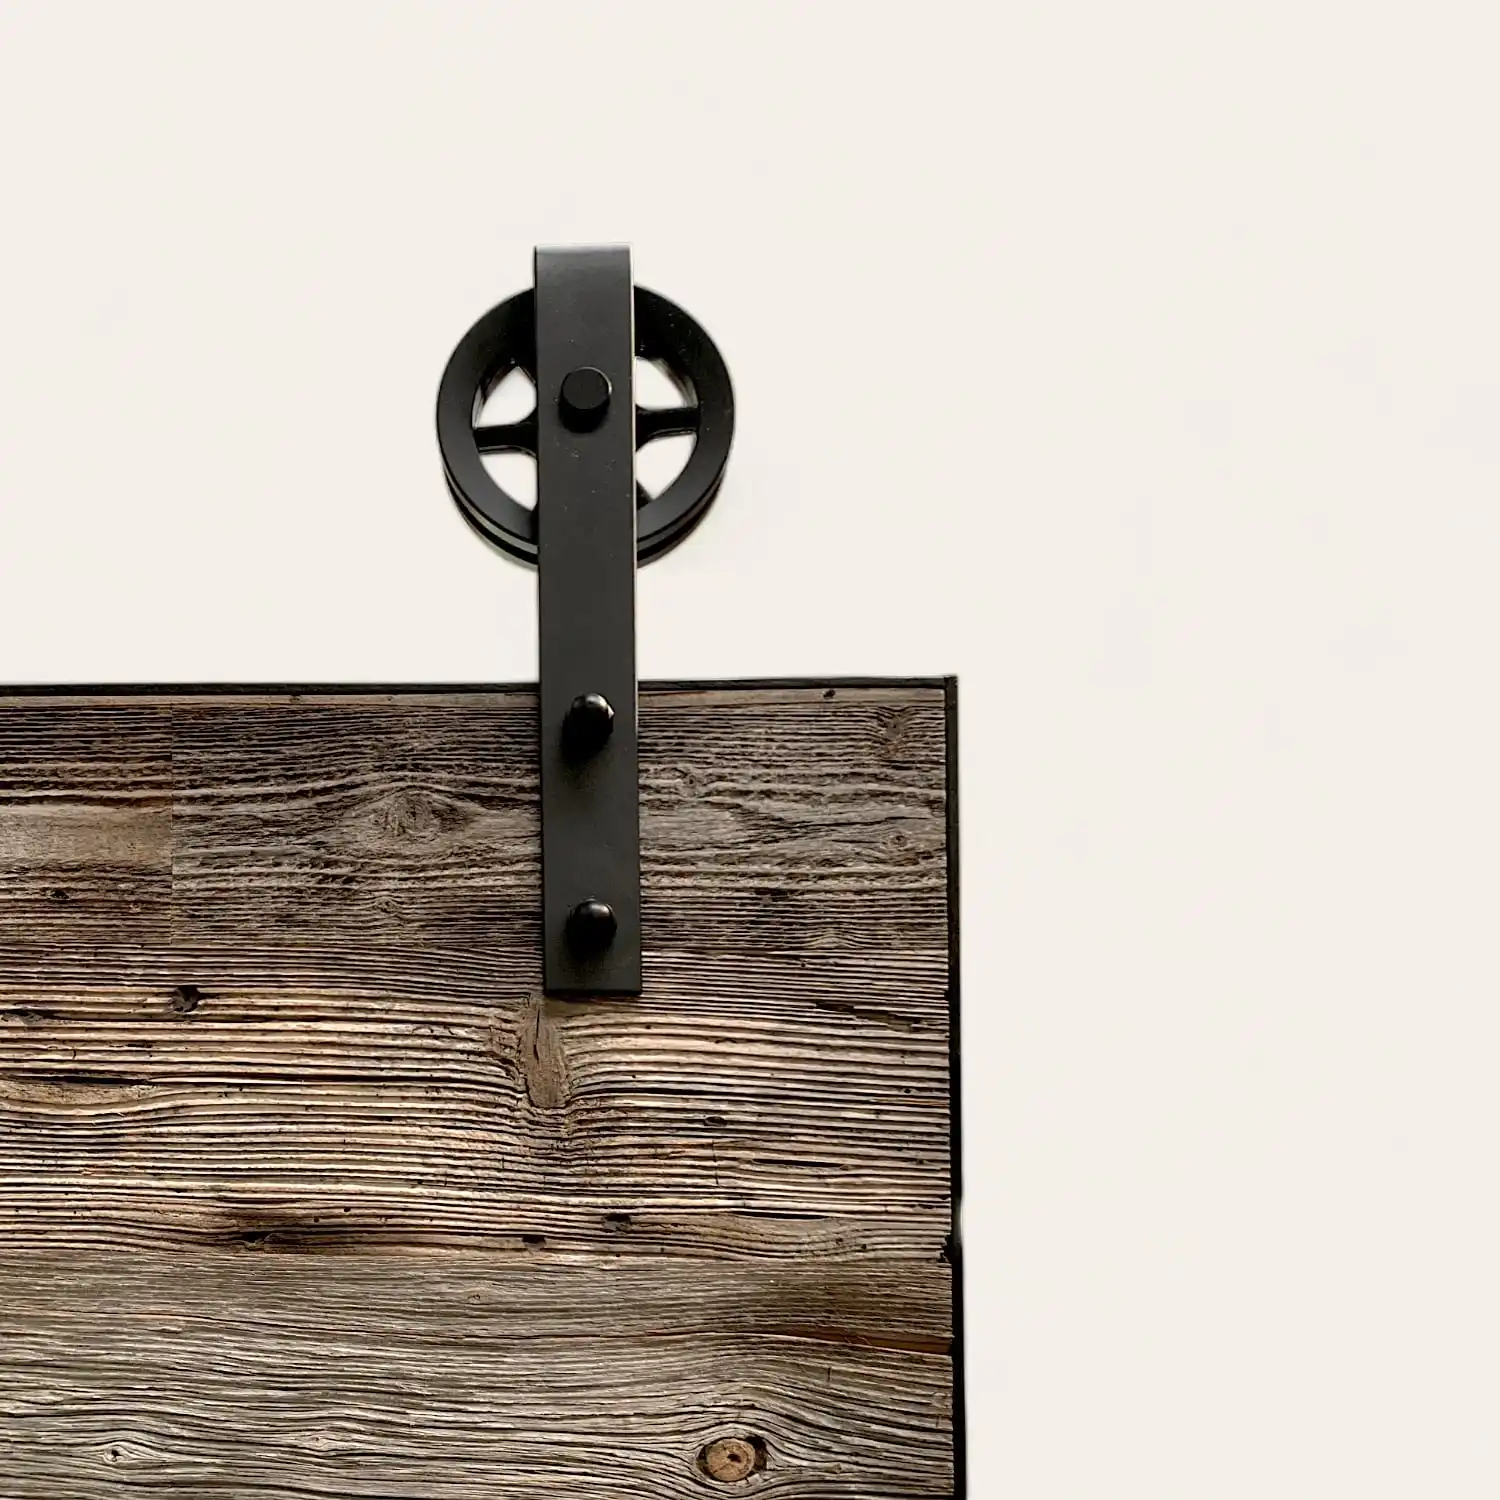 Une porte de grange en bois avec une roue noire dessus.